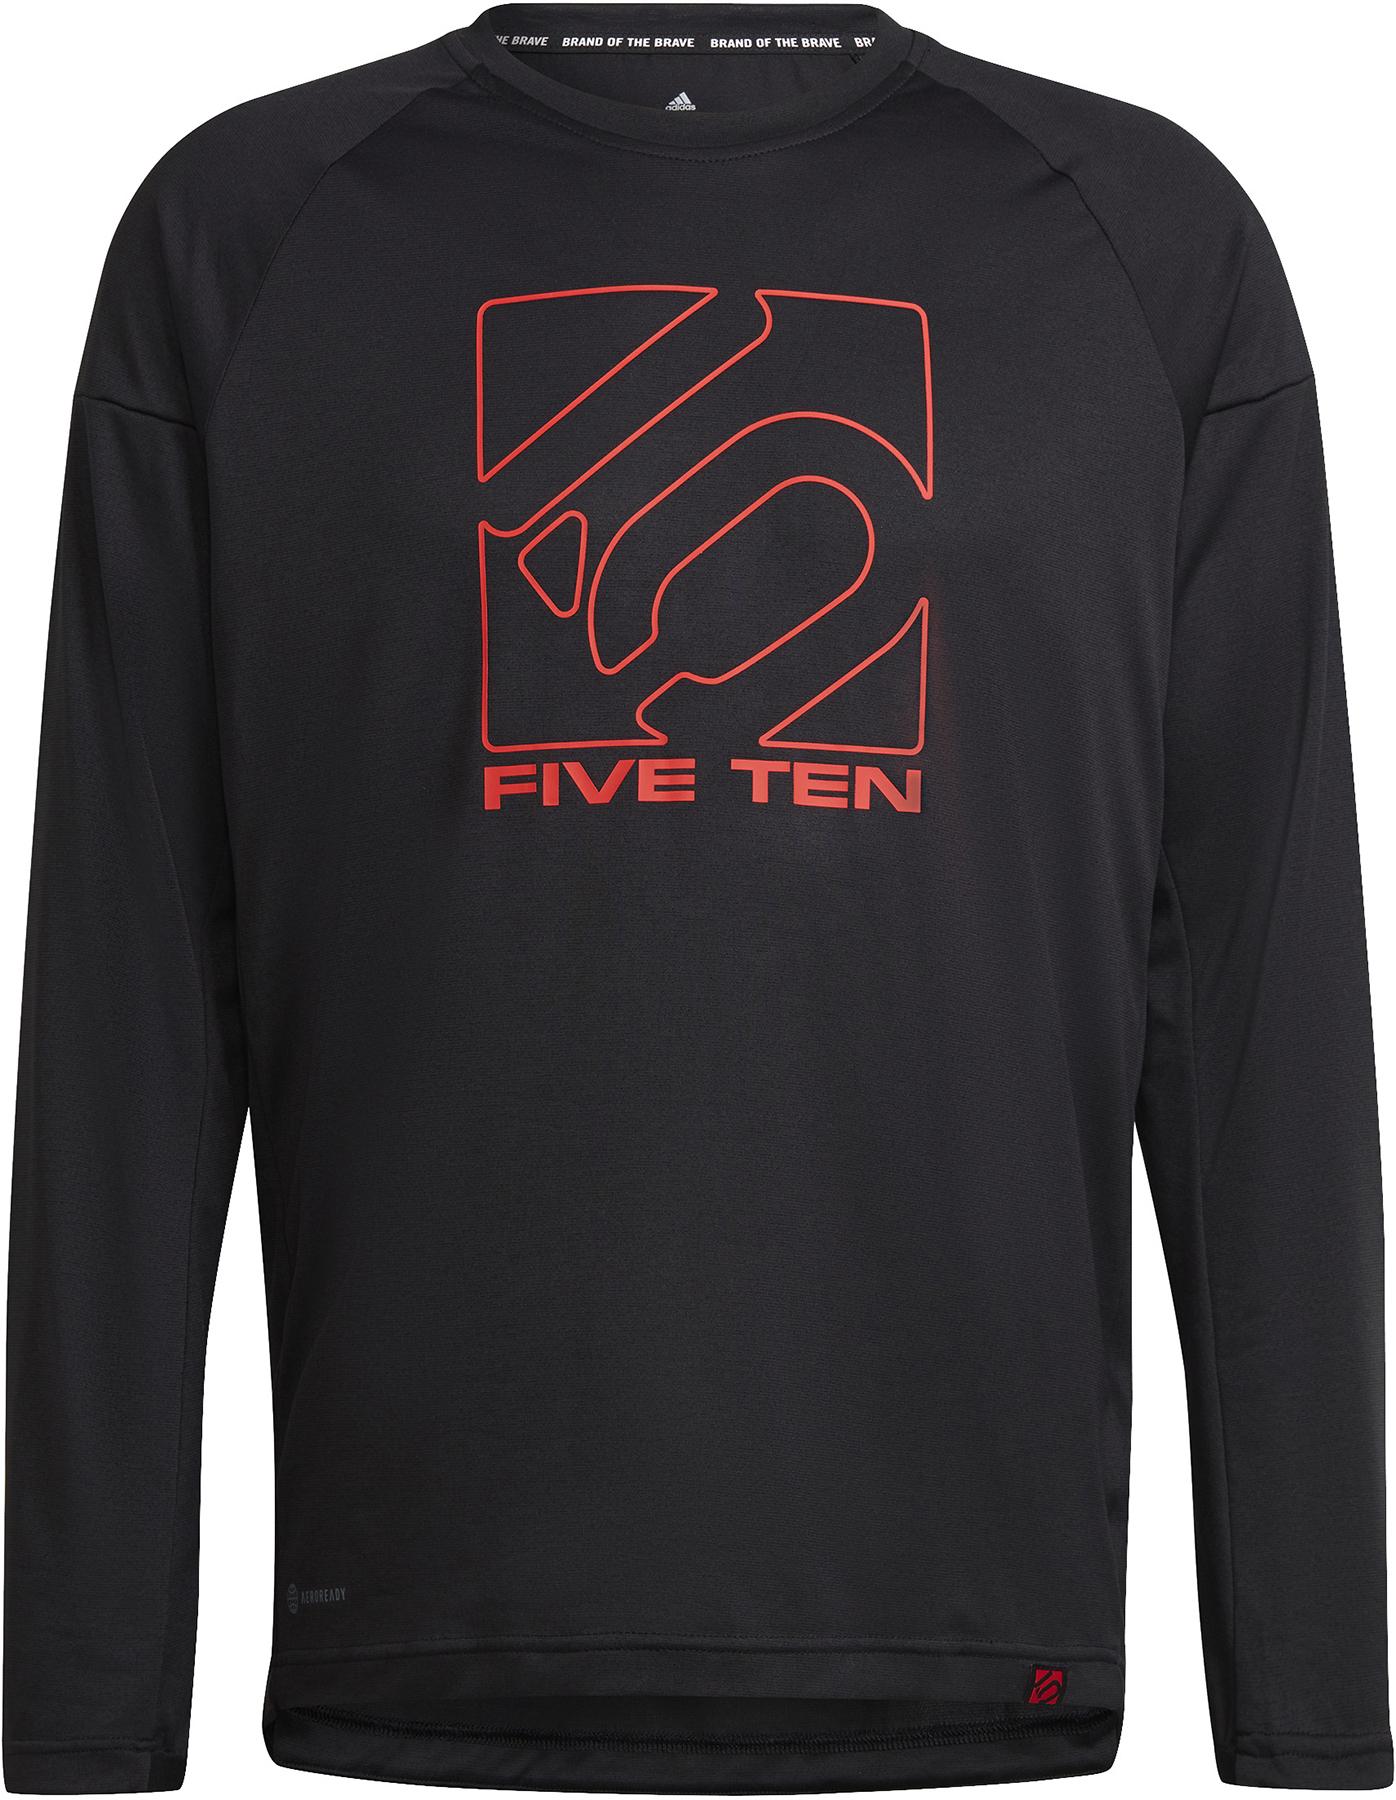 Five Ten Long Sleeve Jersey - Black